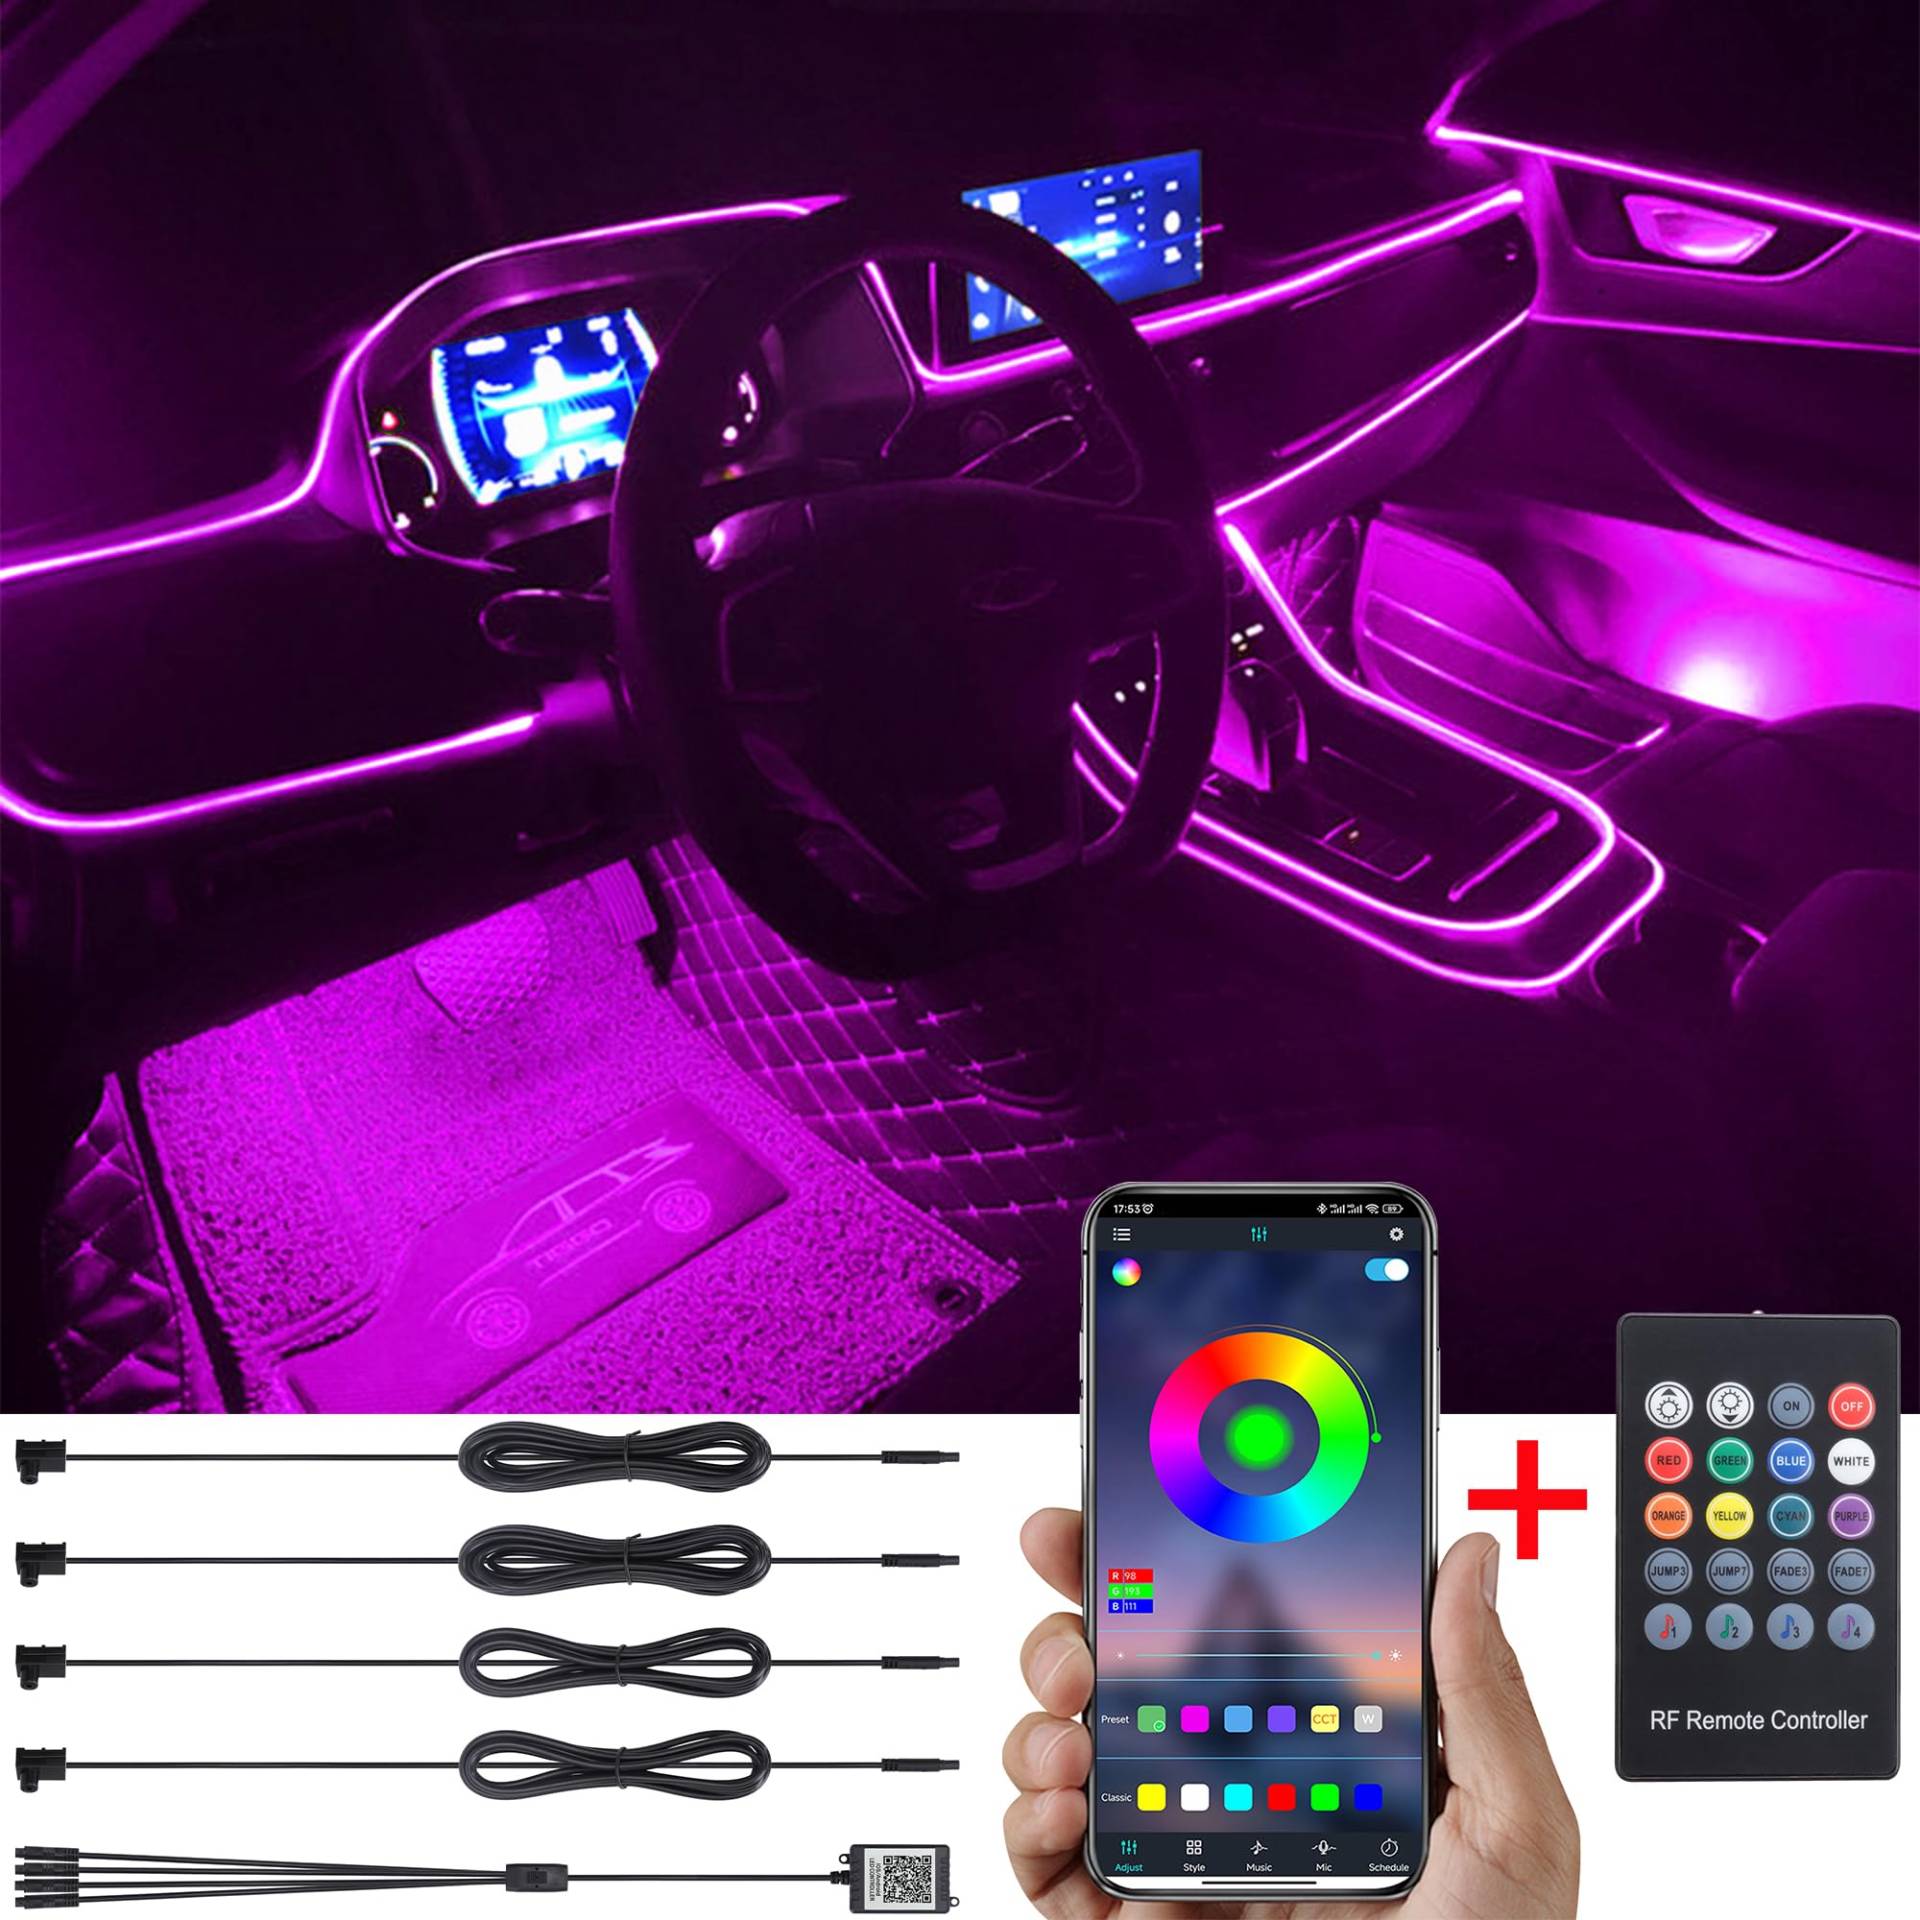 TABEN Auto Umgebungsbeleuchtung Kit 4m Glasfaser 64 Farben RF Fernbedienung + Bluetooth APP Steuerung USB Auto Atmosphäre Licht, DIY 16 Millionen RGB Mehrfarbig Sound Musik Sync Auto Innenbeleuchtung von TABEN